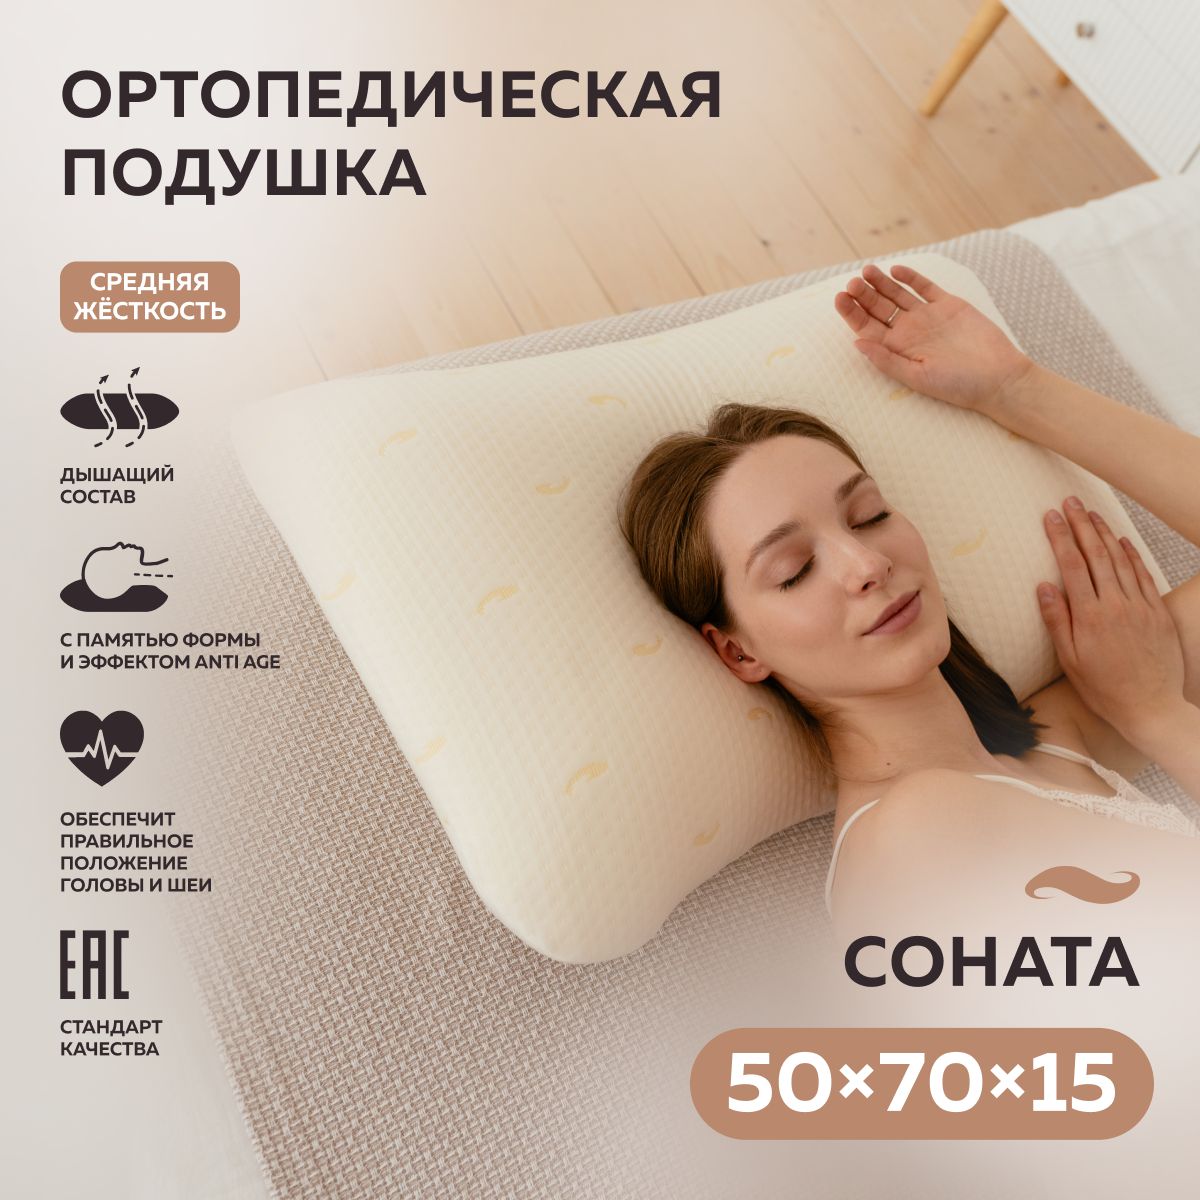 Ортопедическая подушка 50x70 см, ТРИГУР podusha ortopedicheskaya - купить  по низким ценам с доставкой в интернет-магазине OZON (340939186)